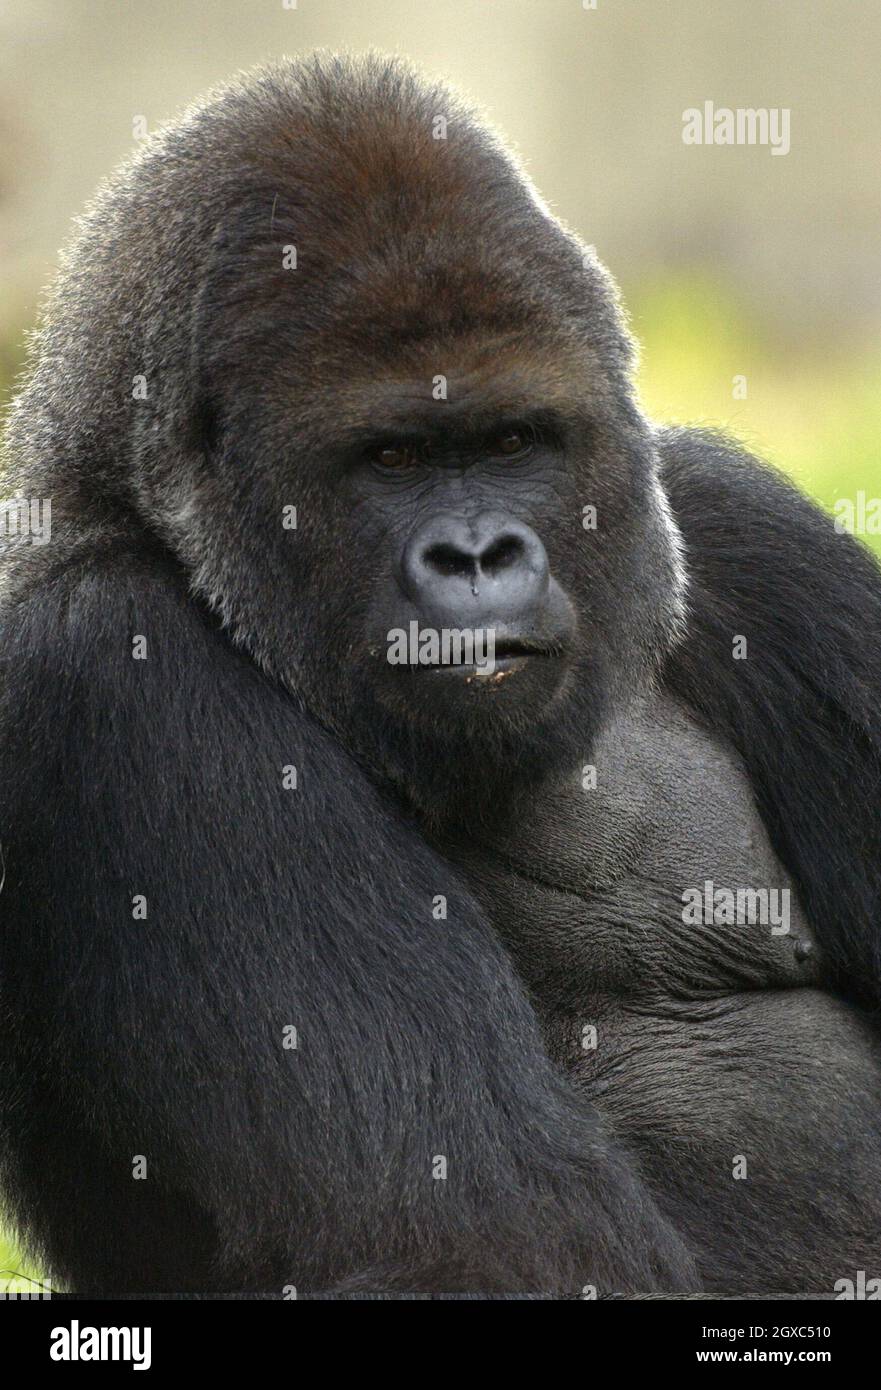 Zaire, la gorilla femminile di 33 anni, si trova nel nuovo regno di Gorilla allo Zoo di Londra, aperto dal principe Filippo, duca di Edimburgo il 29 marzo 2007 a Londra. Foto Stock